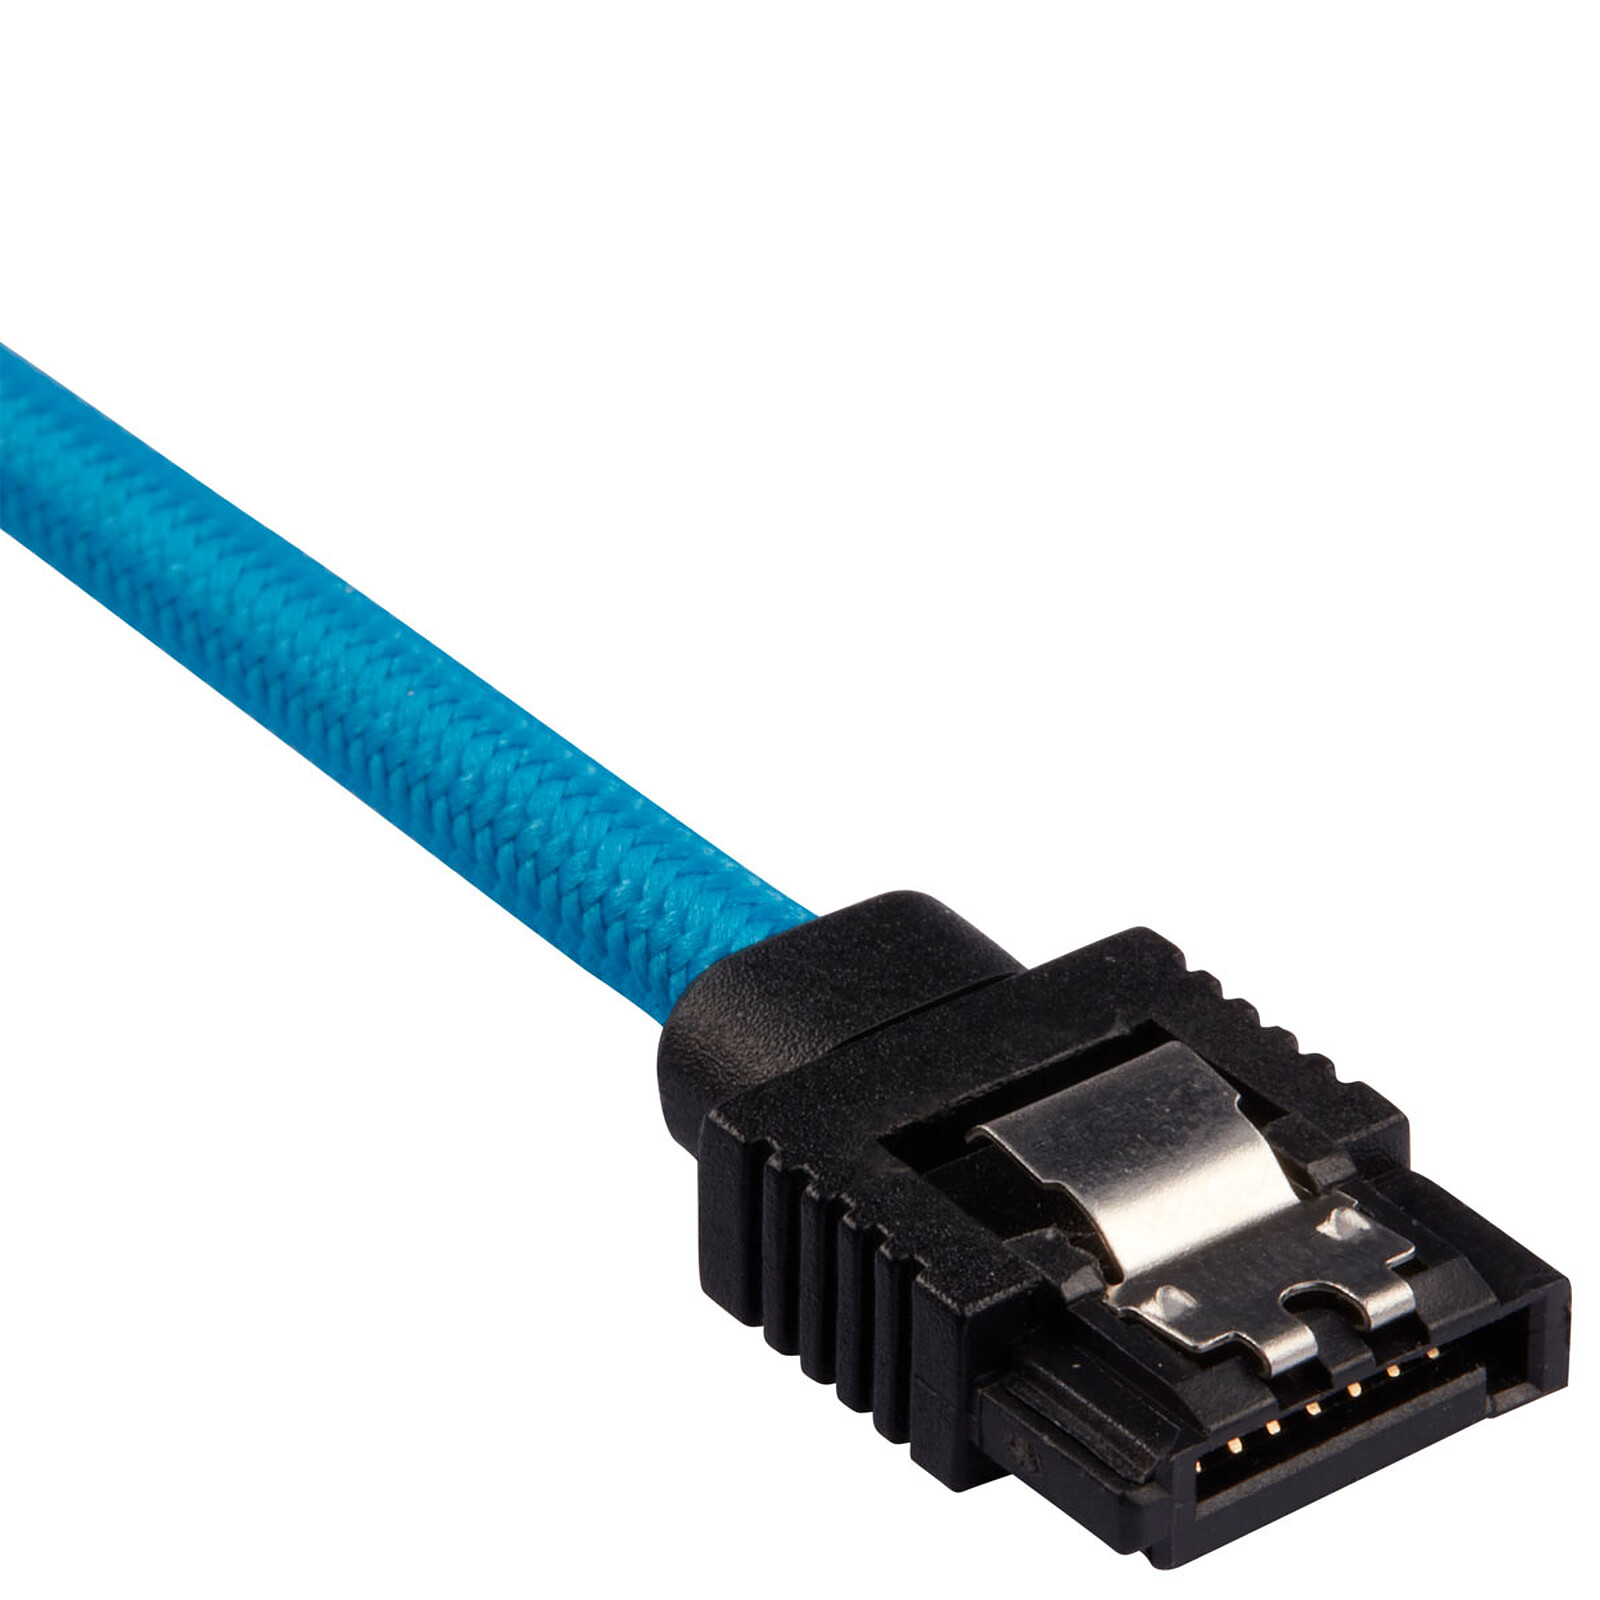 Câble SATA coudé vers le bas (50 cm) - Serial ATA - Garantie 3 ans LDLC